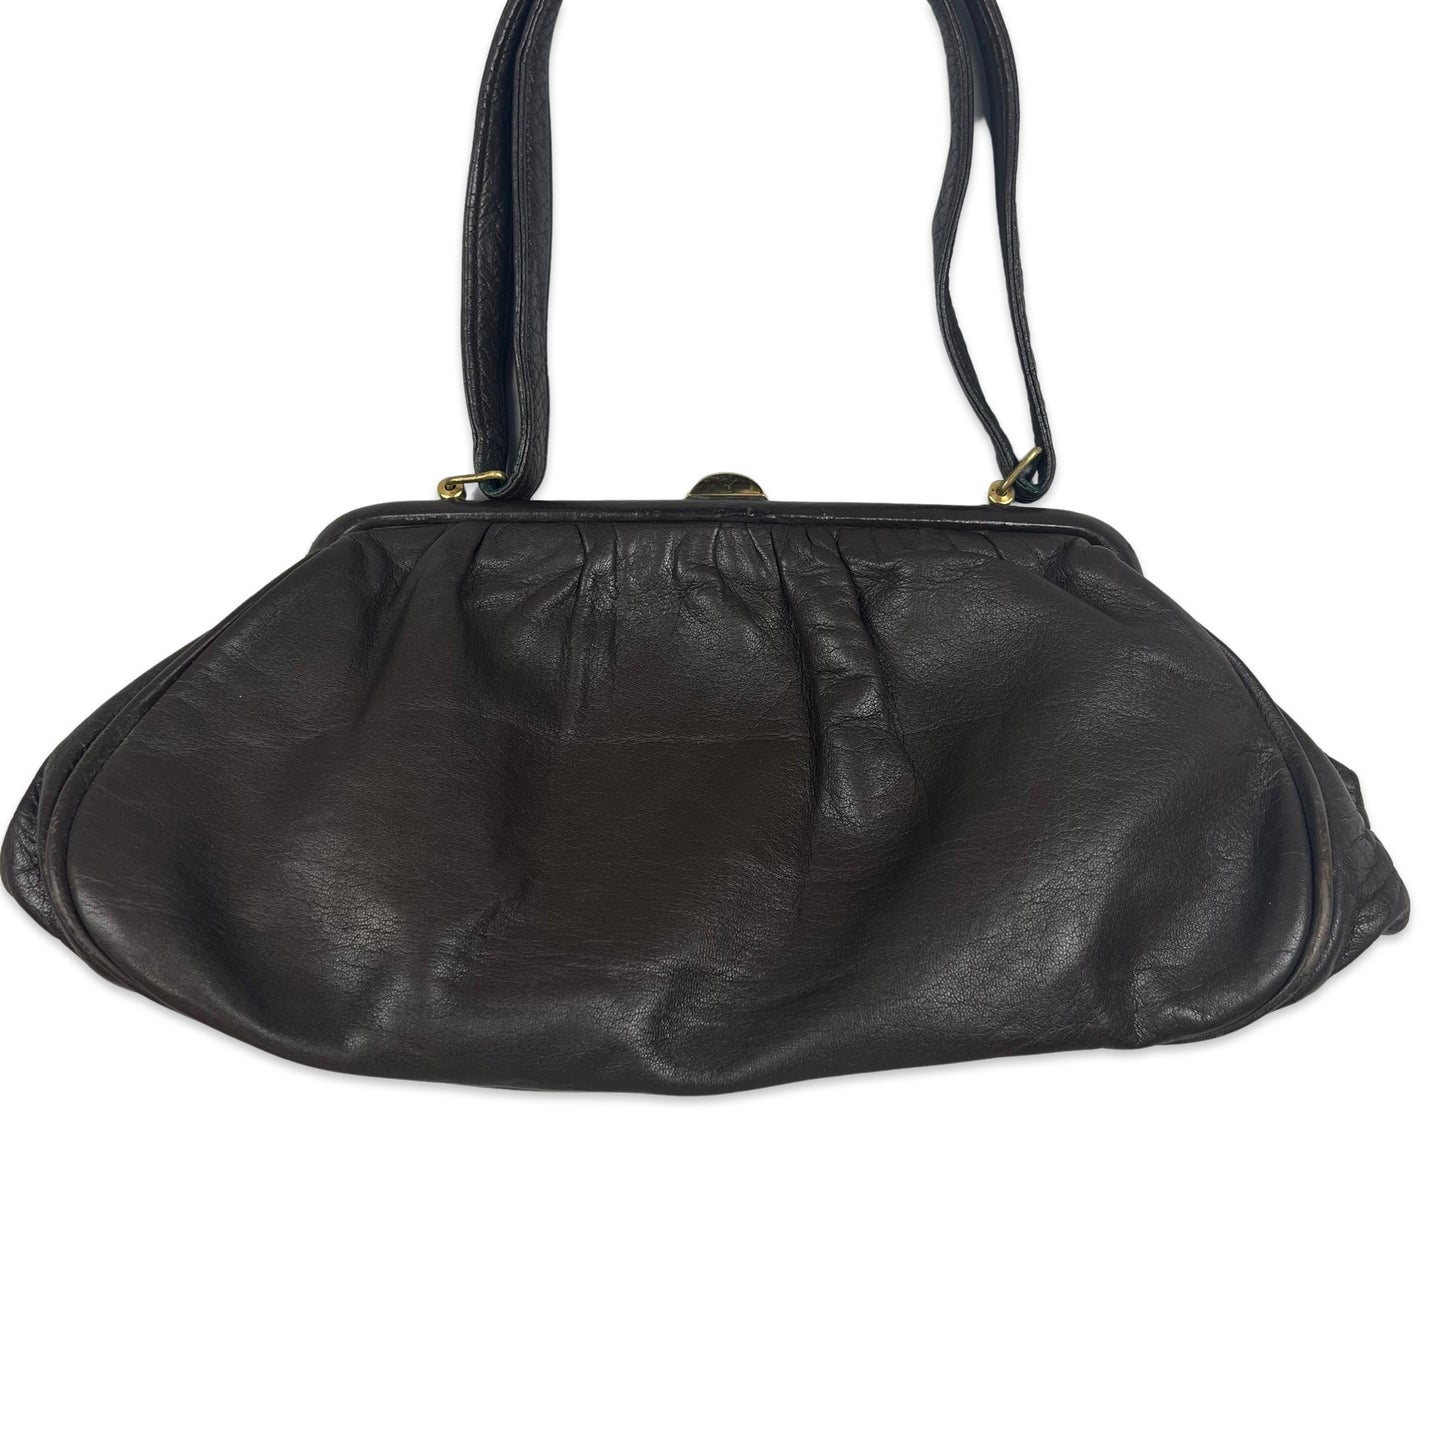 80s Vintage Baguette Leather Handbag Brown